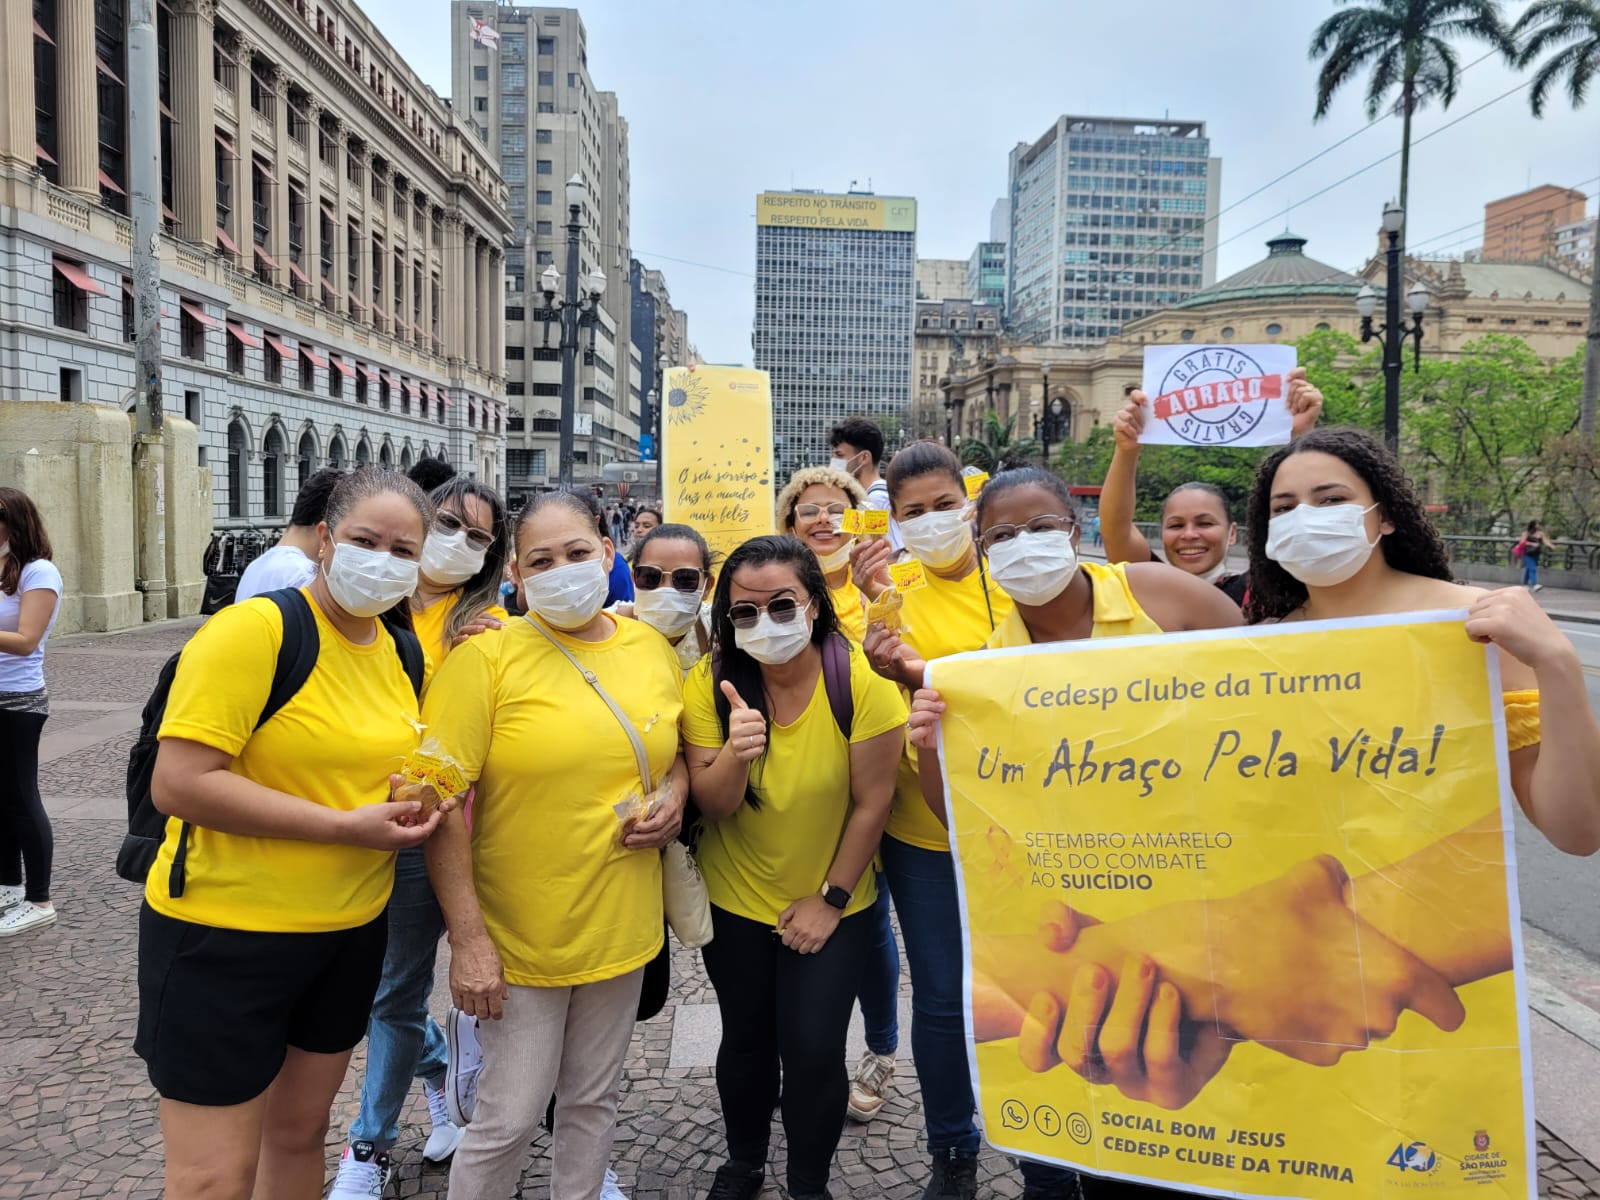 Na imagem mostram um grupo de pessoas vestidas de camisetas amarelas, sorrindo para a câmera, em meio aos prédios da cidade de São Paulo. Algumas pessoas seguram cartazes escritos "CEDESP Clube da Turma" e " Um abraço pela vida".